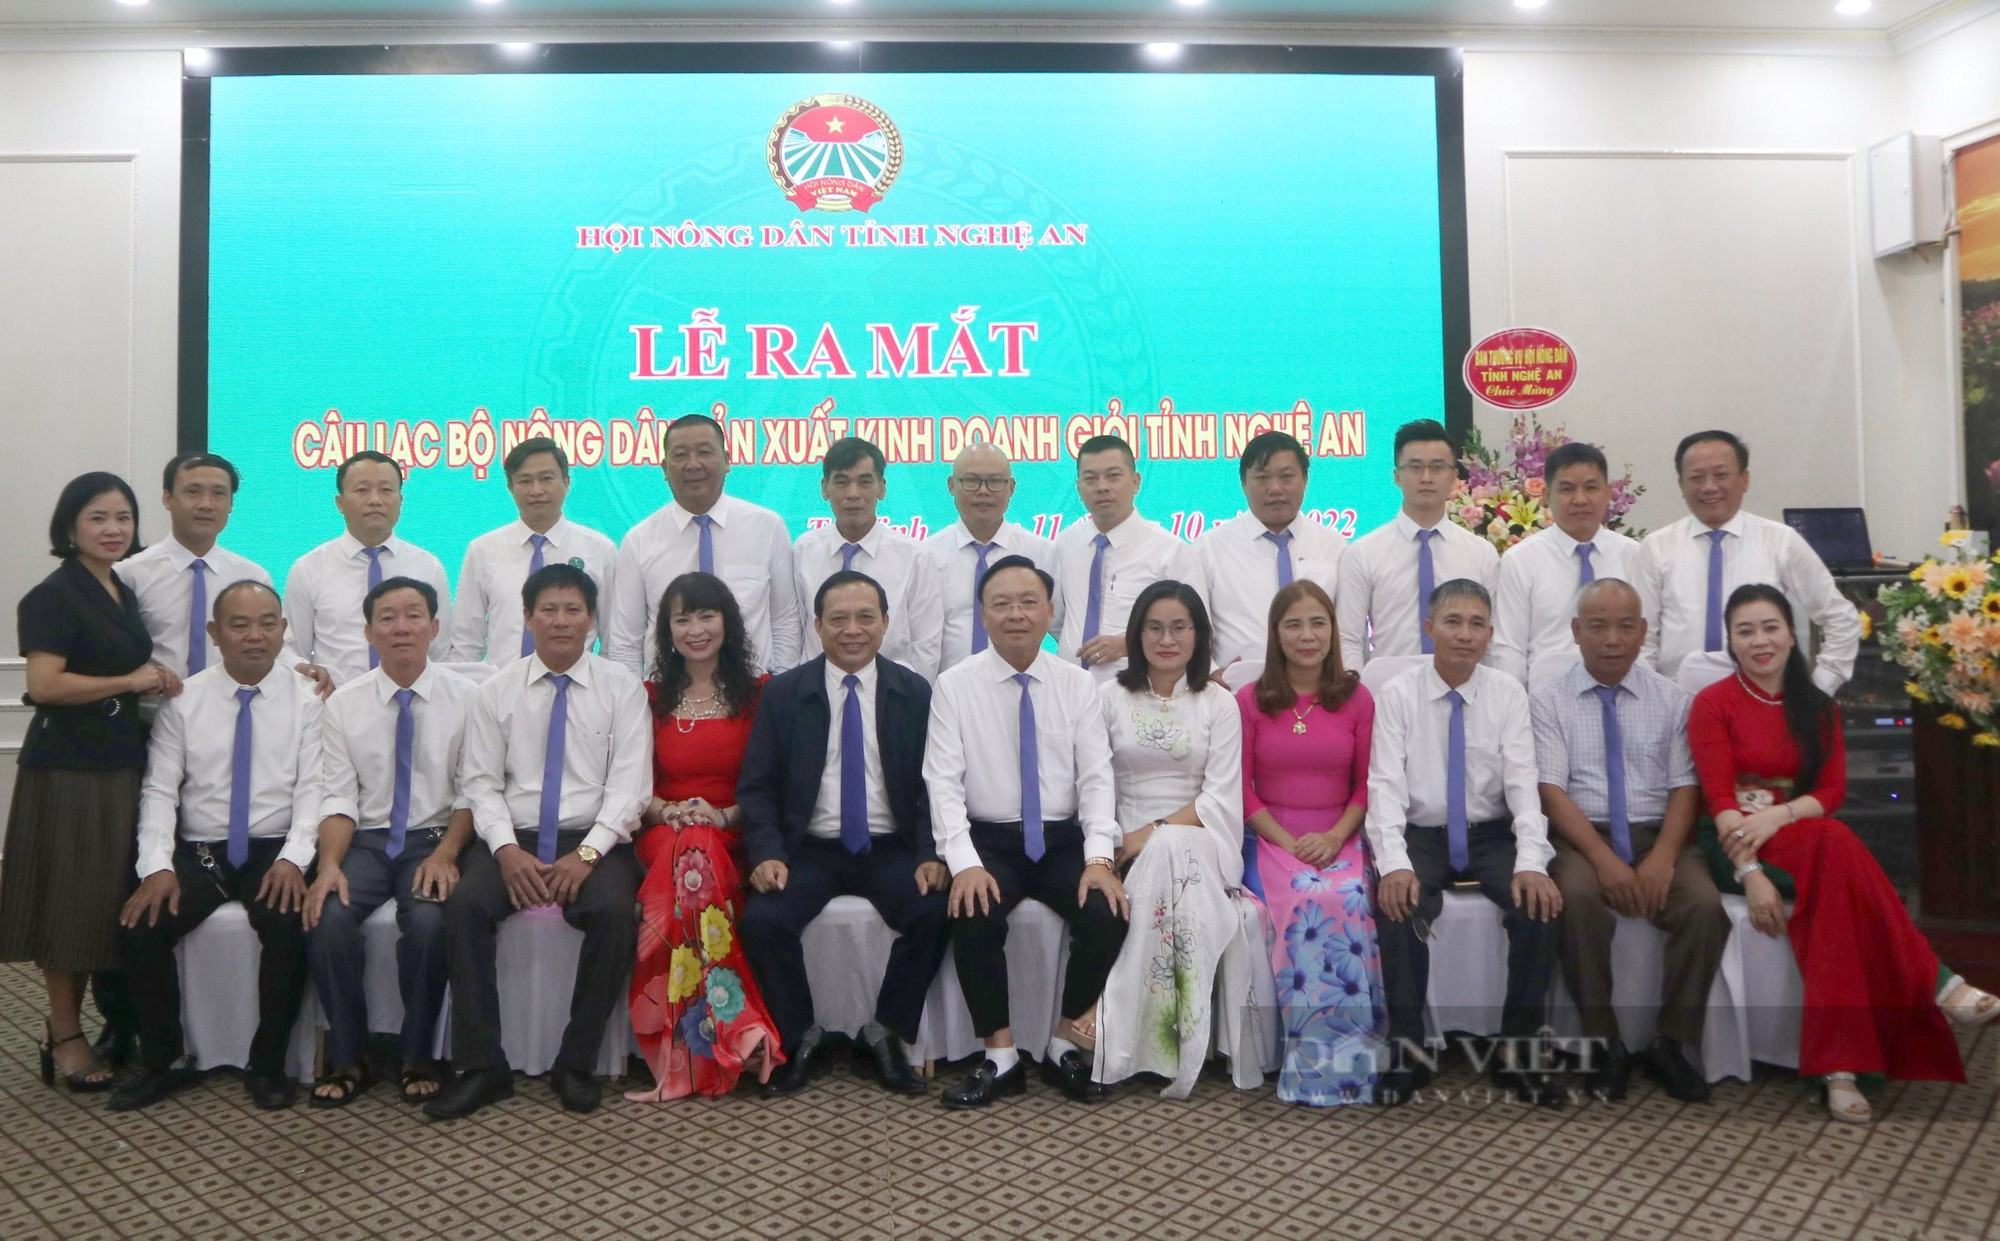 Ra mắt câu lạc bộ nông dân sản xuất kinh doanh giỏi tỉnh Nghệ An - Ảnh 4.